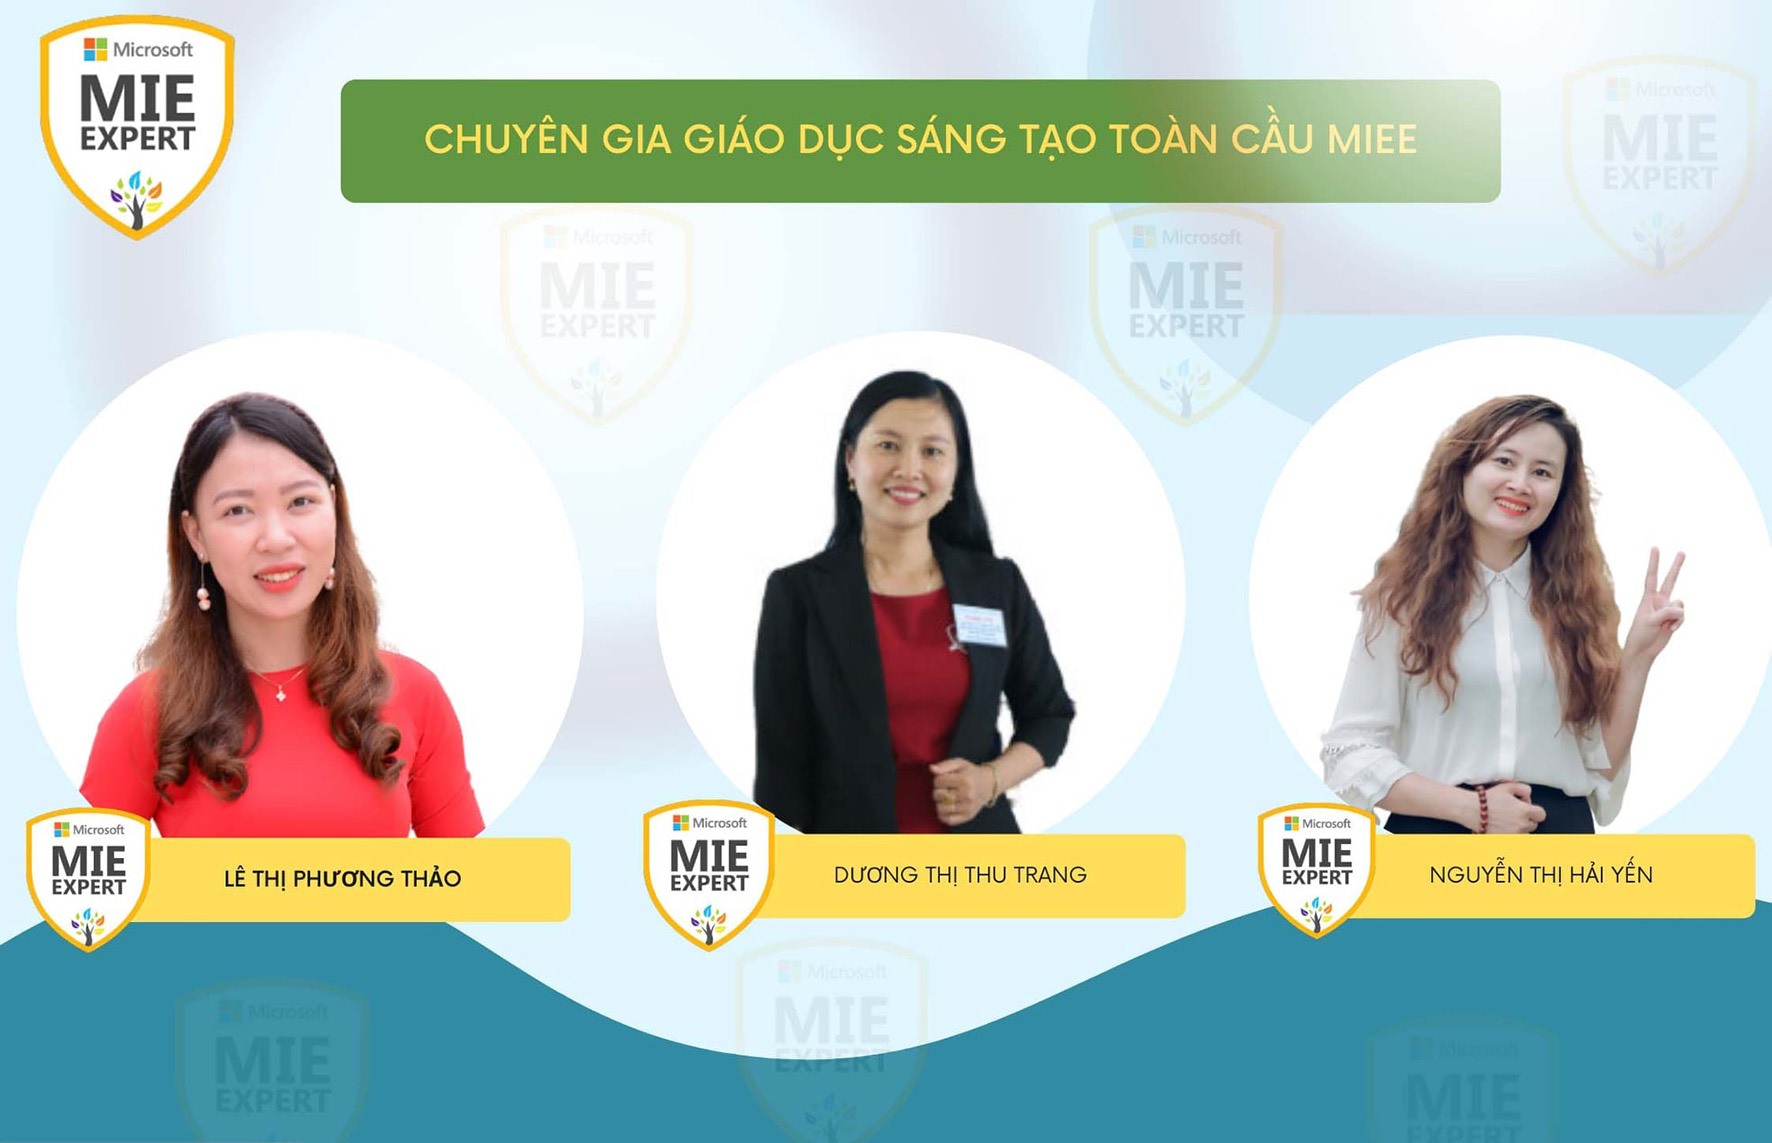 3 giáo viên Trường iSchool Quảng Trị vừa được công nhận là “chuyên gia giáo dục sáng tạo toàn cầu MIEE” - Ảnh: iSchool QT